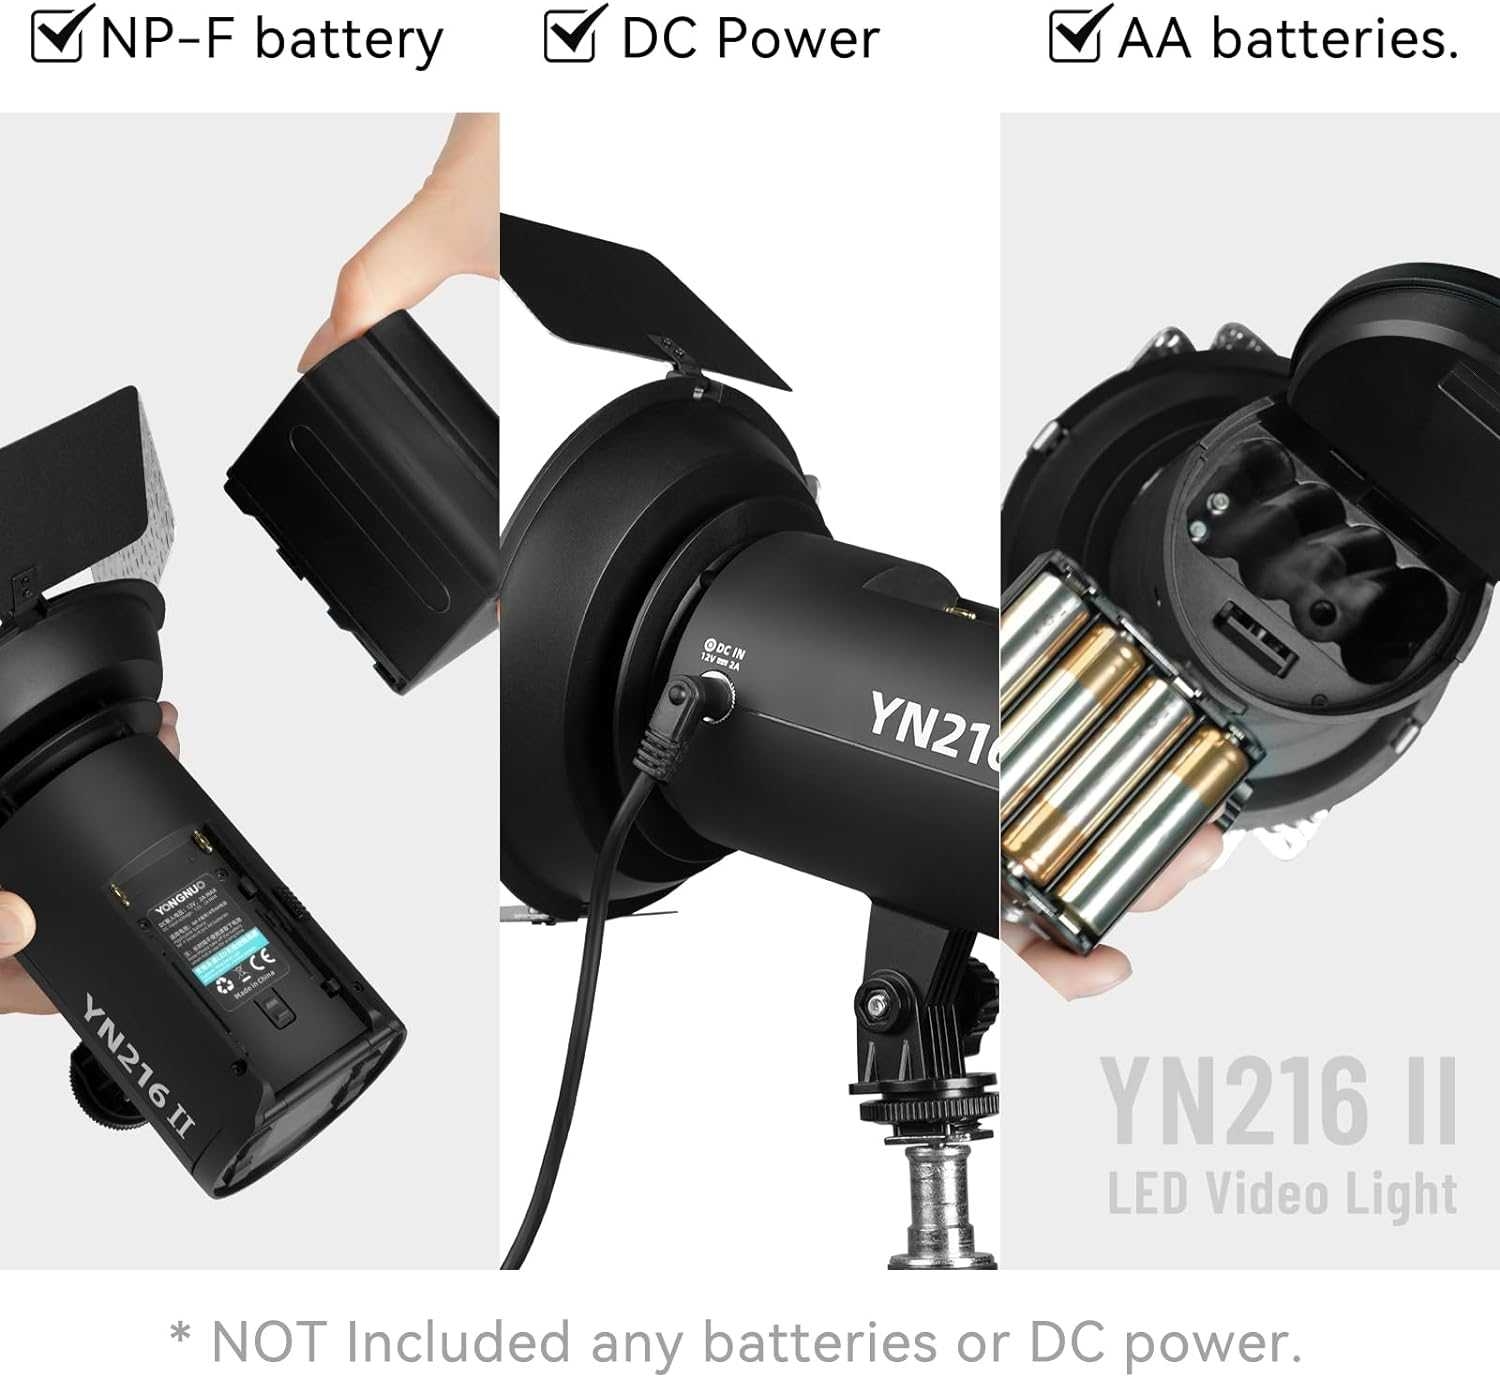 YONGNUO YN216 II Pro LED Video Light